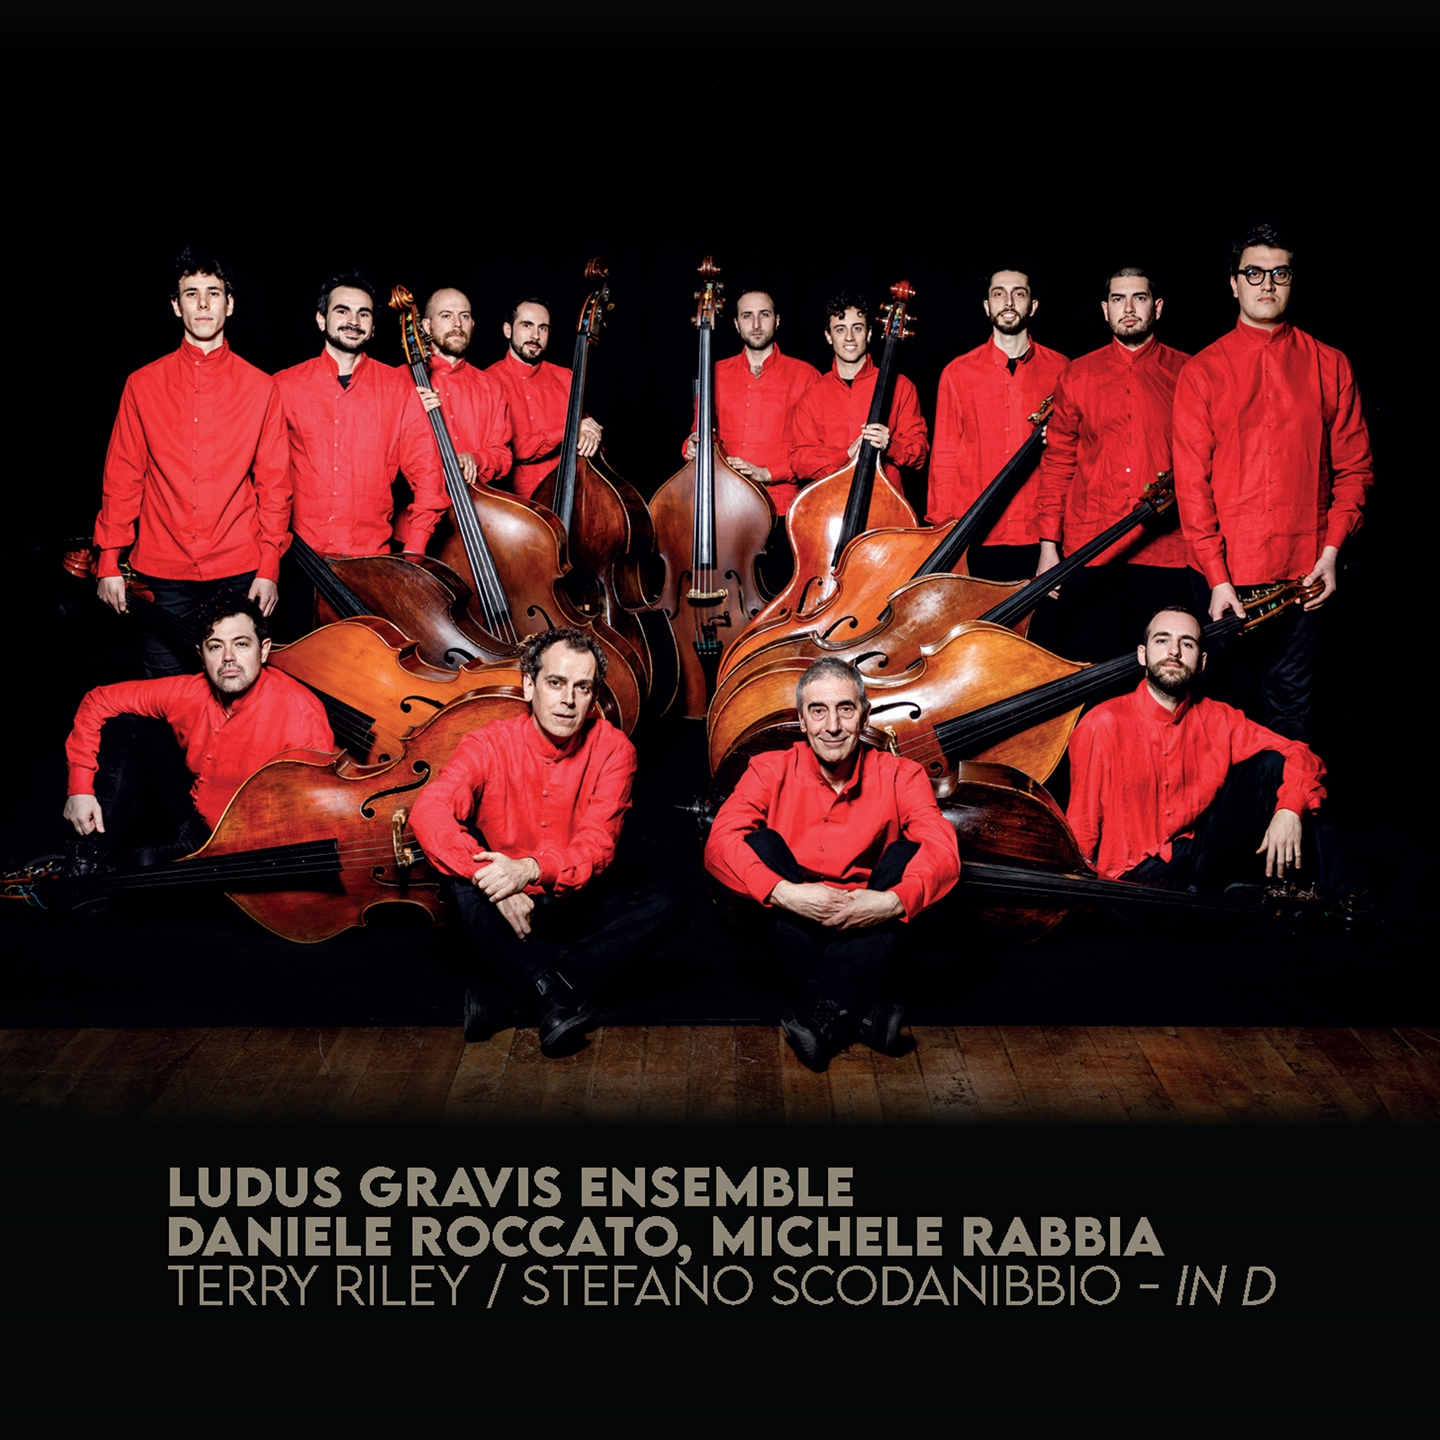 Ludus Gravis Ensemble - Terry Riley, Stefano Scodanibbio - In D - Foto 1 di 1